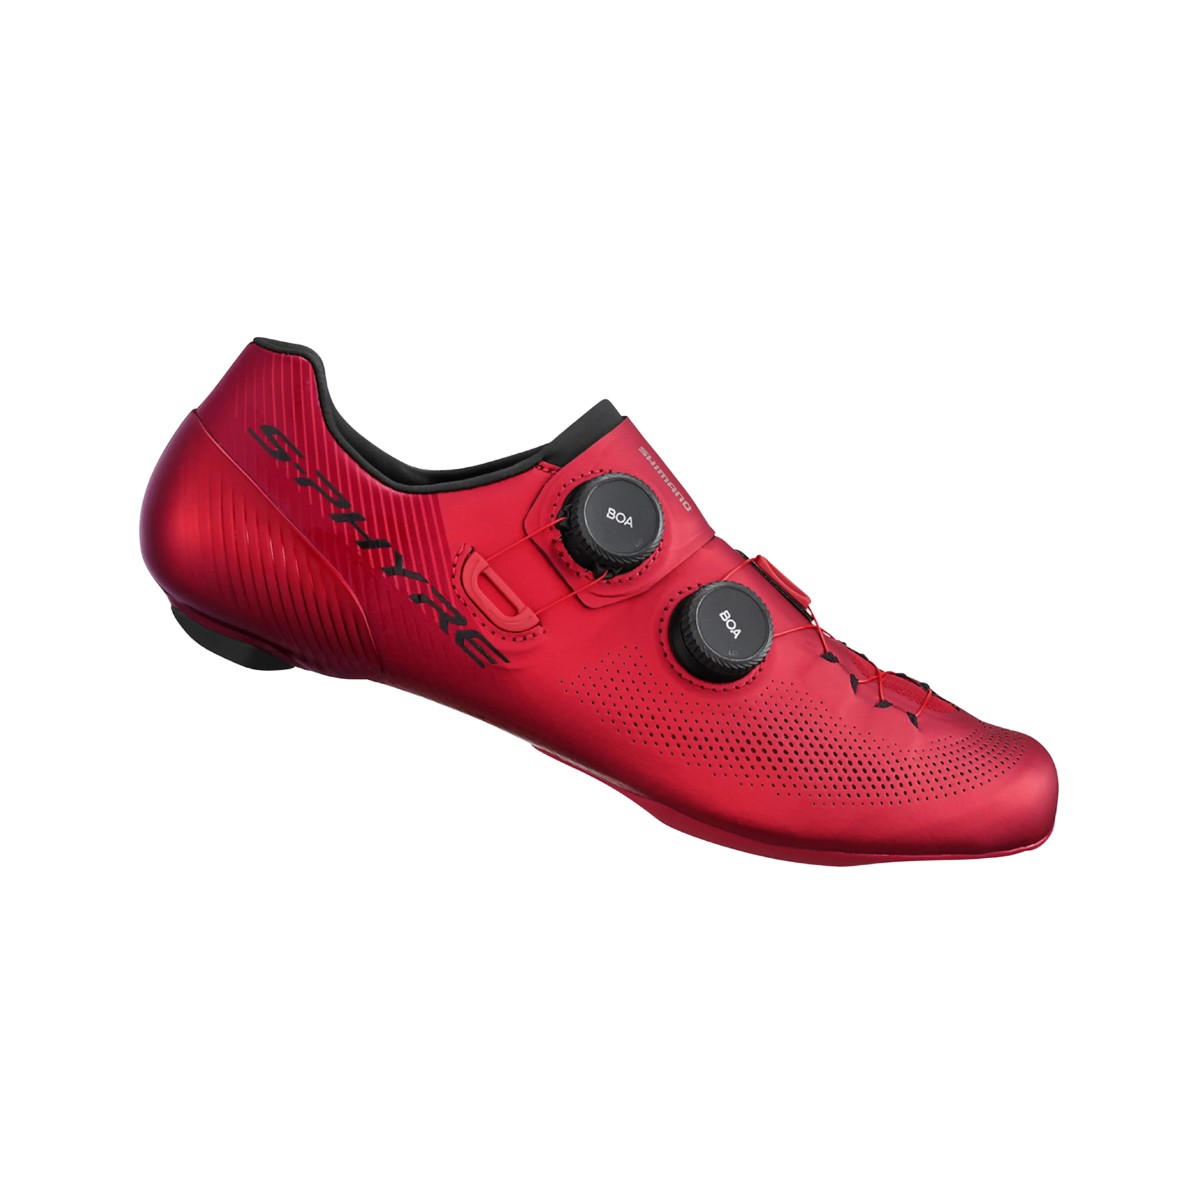 Schuhe Shimano RC903 S-PHYRE Rot, Größe 44,5 - EUR